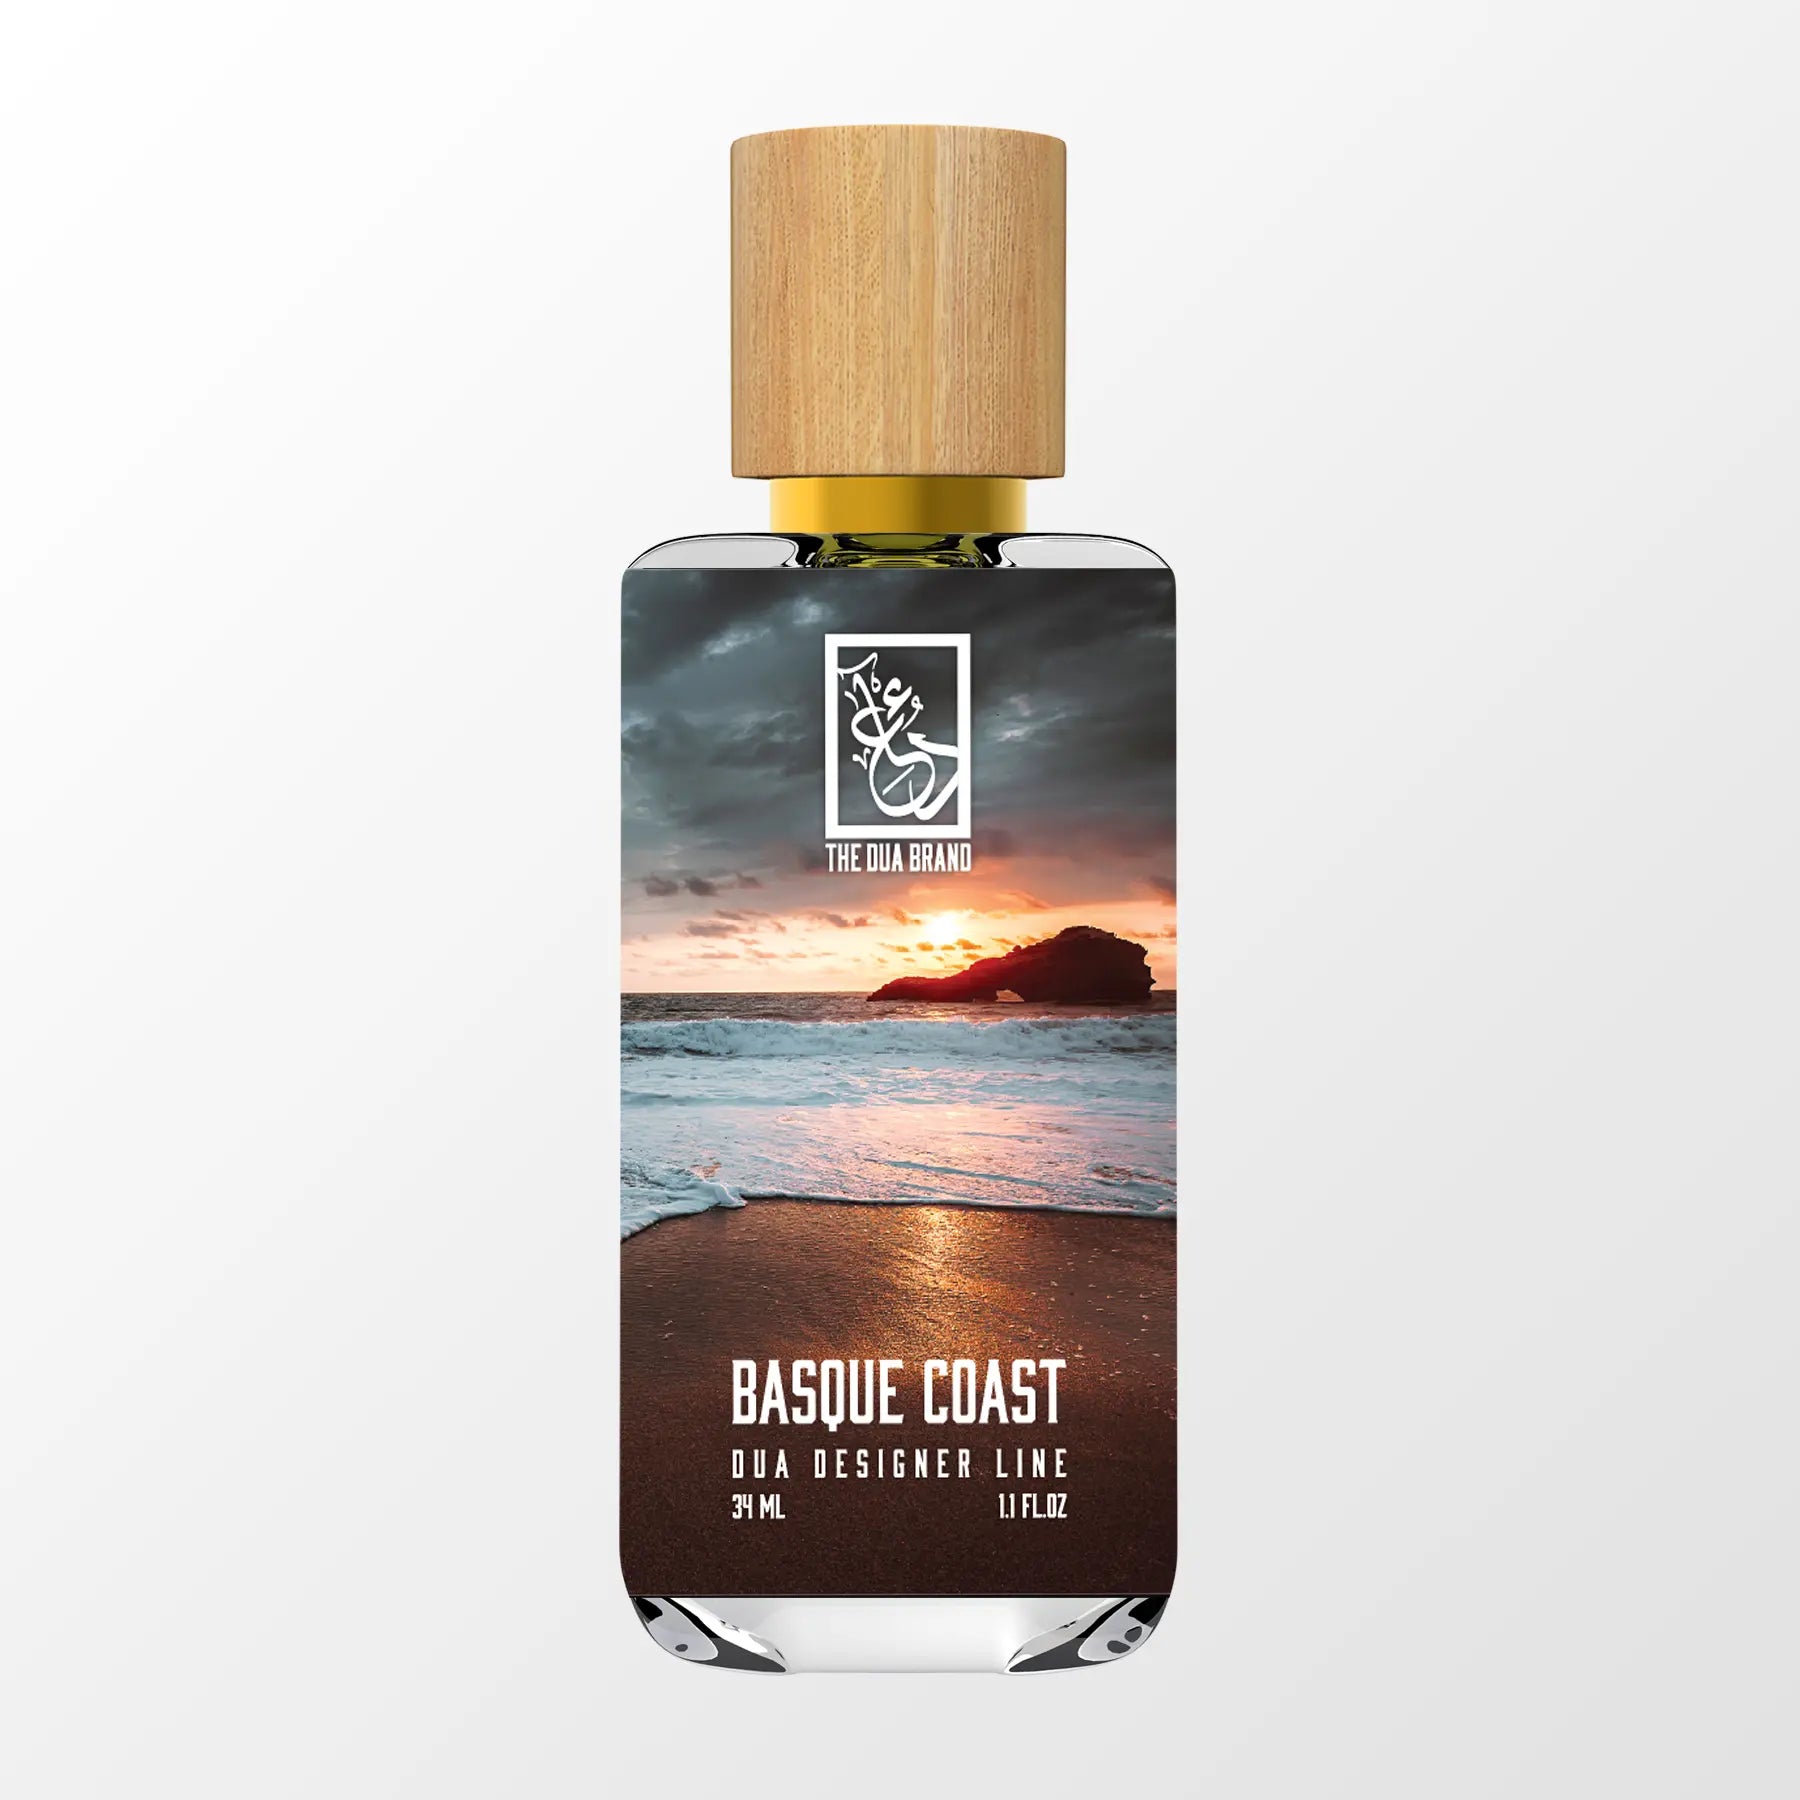 Basque Coast - Dua Fragrances - Inspired by Paris – Biarritz Chanel - Unisex Perfume - 34ml/1.1 fl oz - Extrait de Parfum